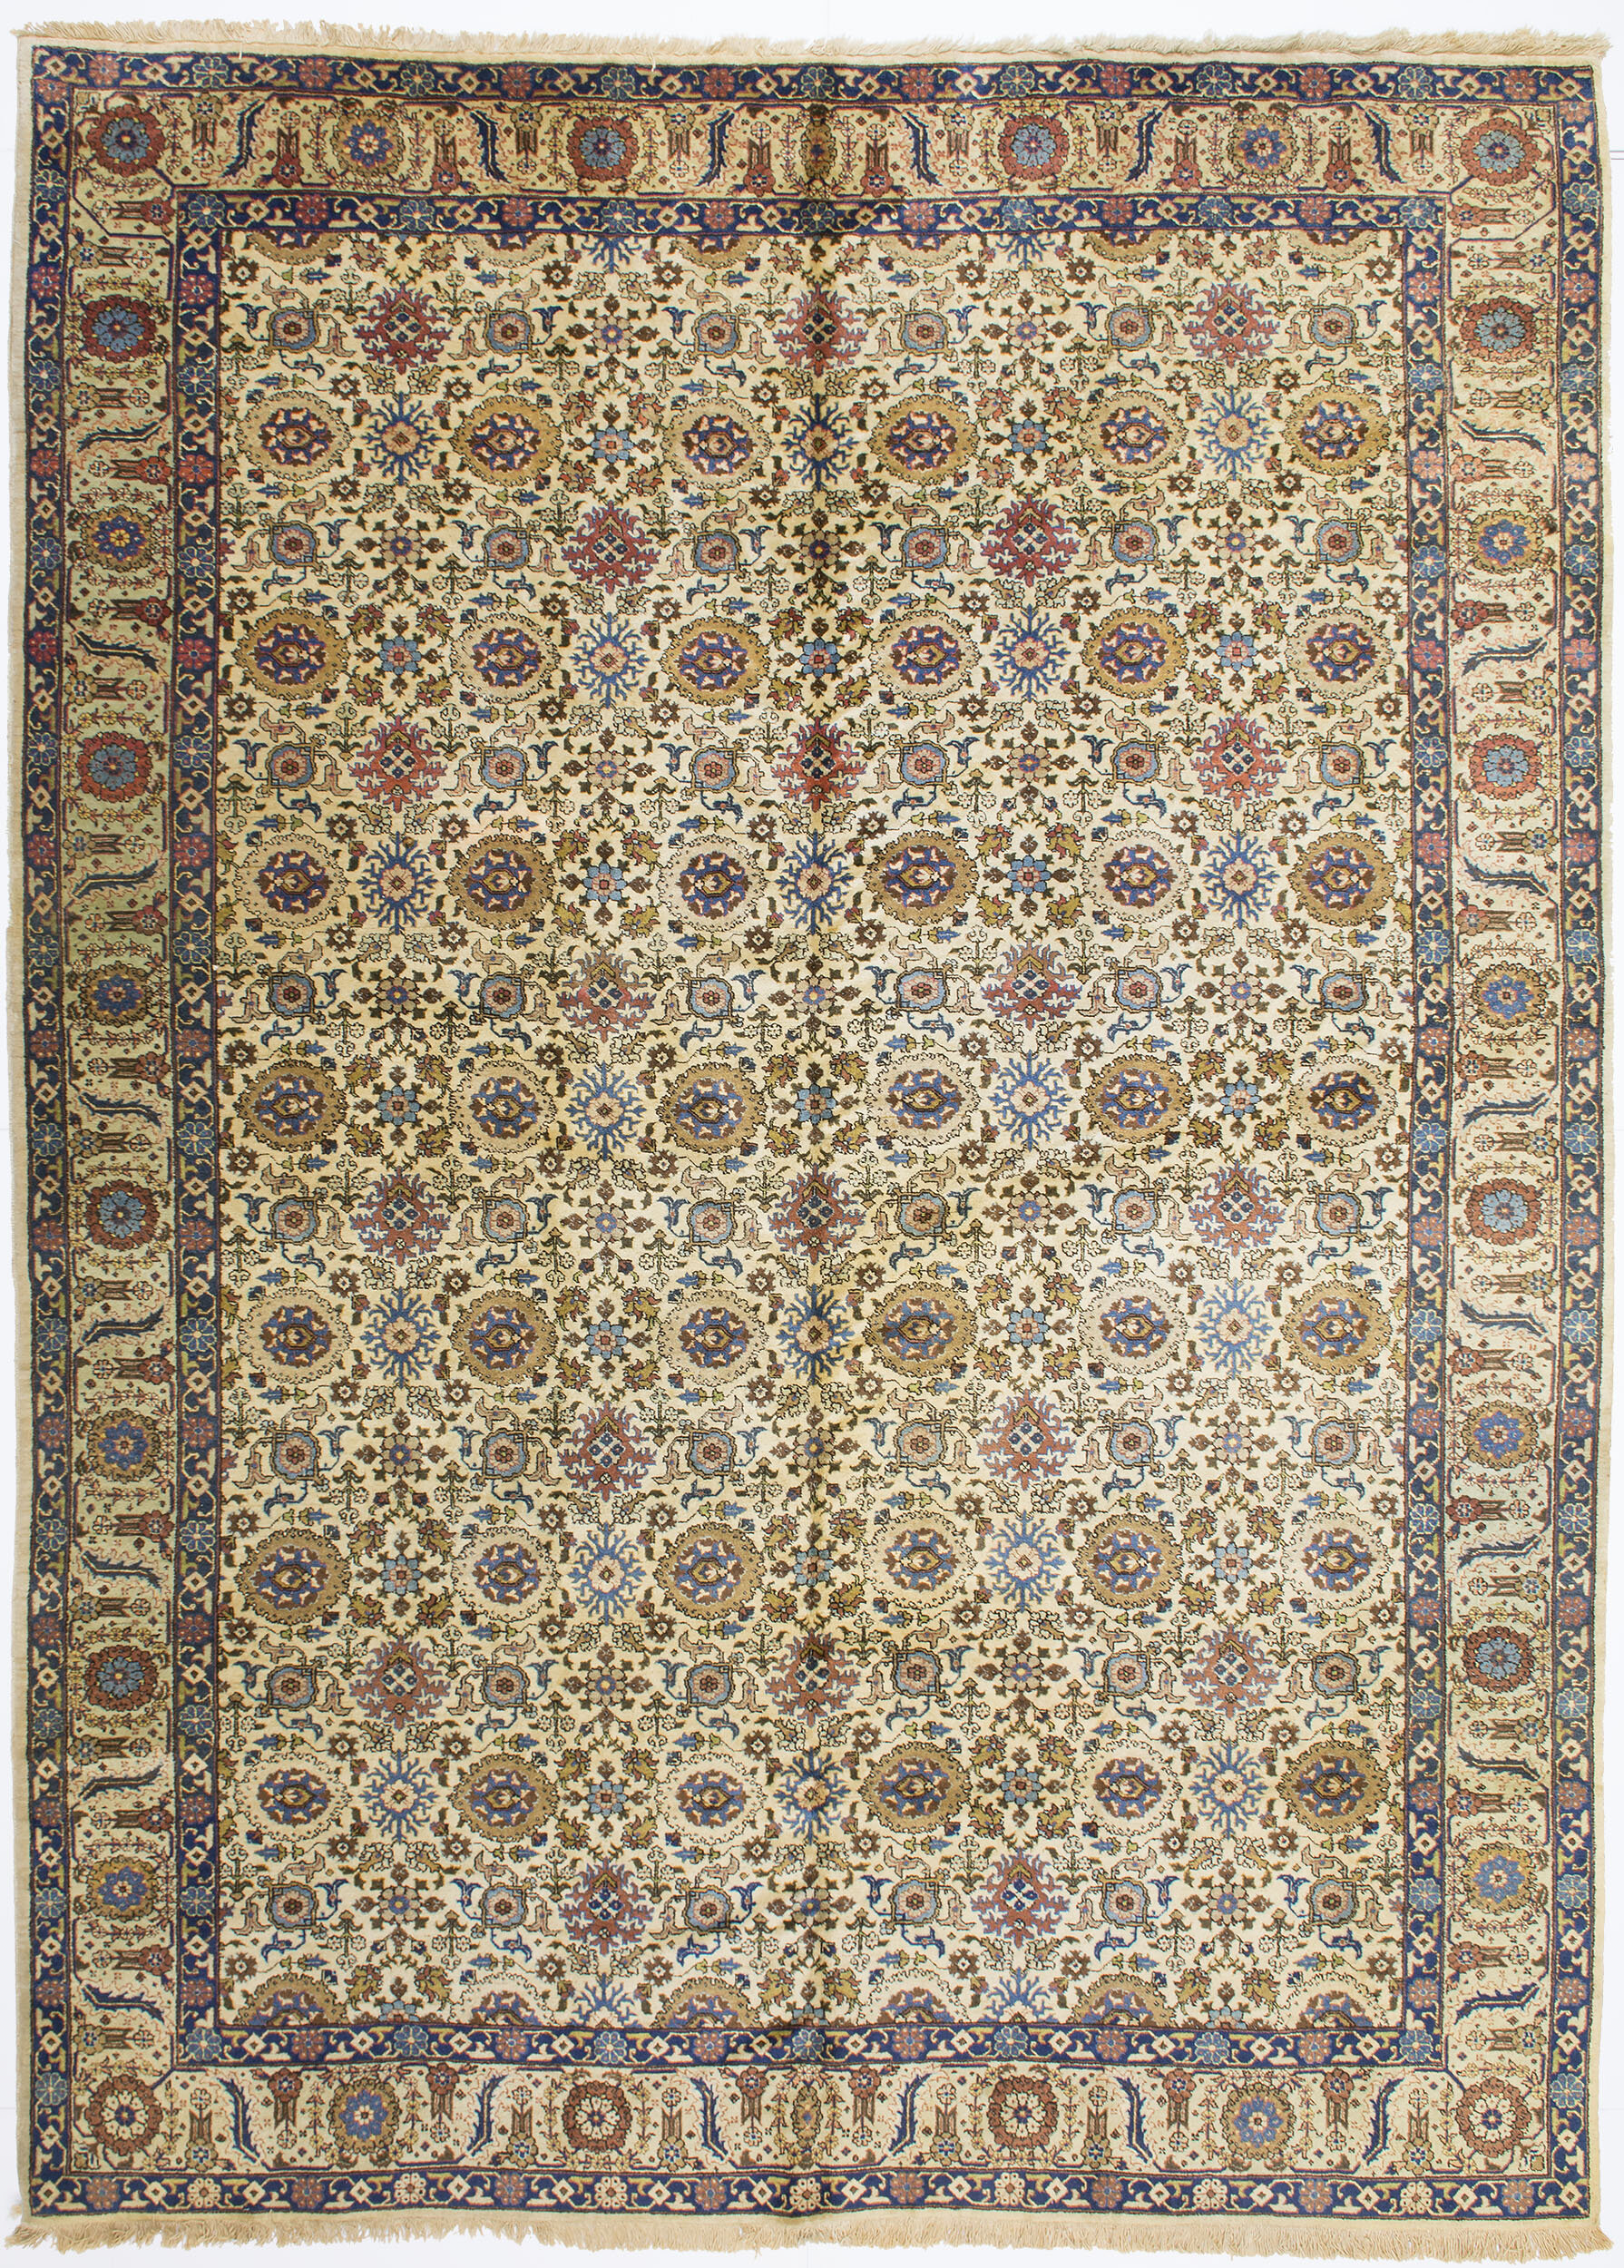 Tabriz Carpet 11' 1" x 8' 1" 